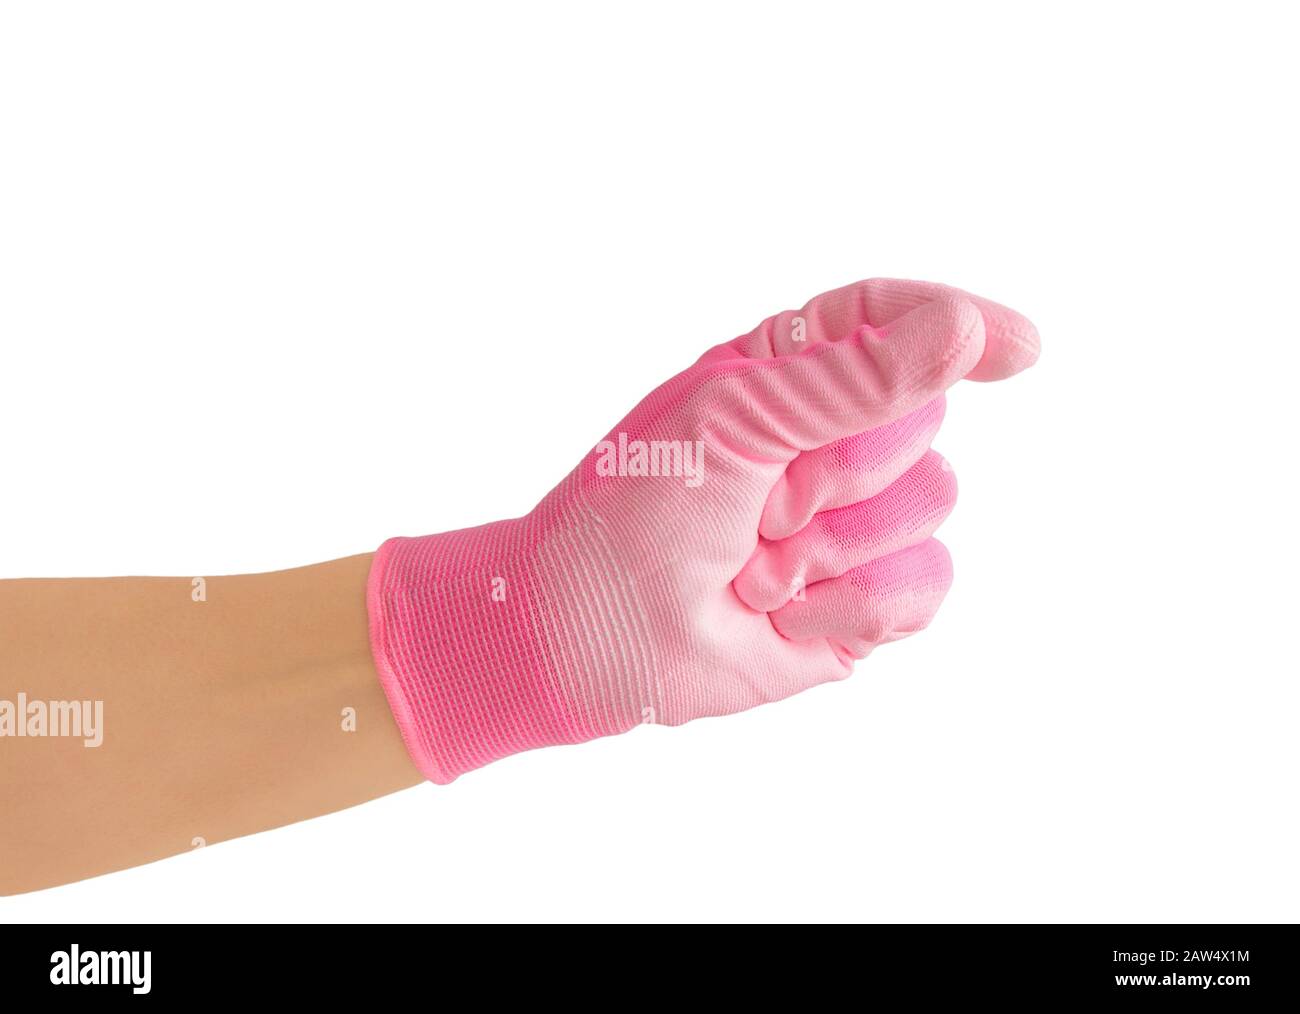 Femme gestuelle et tenant quelque chose entre les doigts, portant un gant de travail de paume en caoutchouc textile rose. Isolé sur blanc avec espace de copie. Banque D'Images